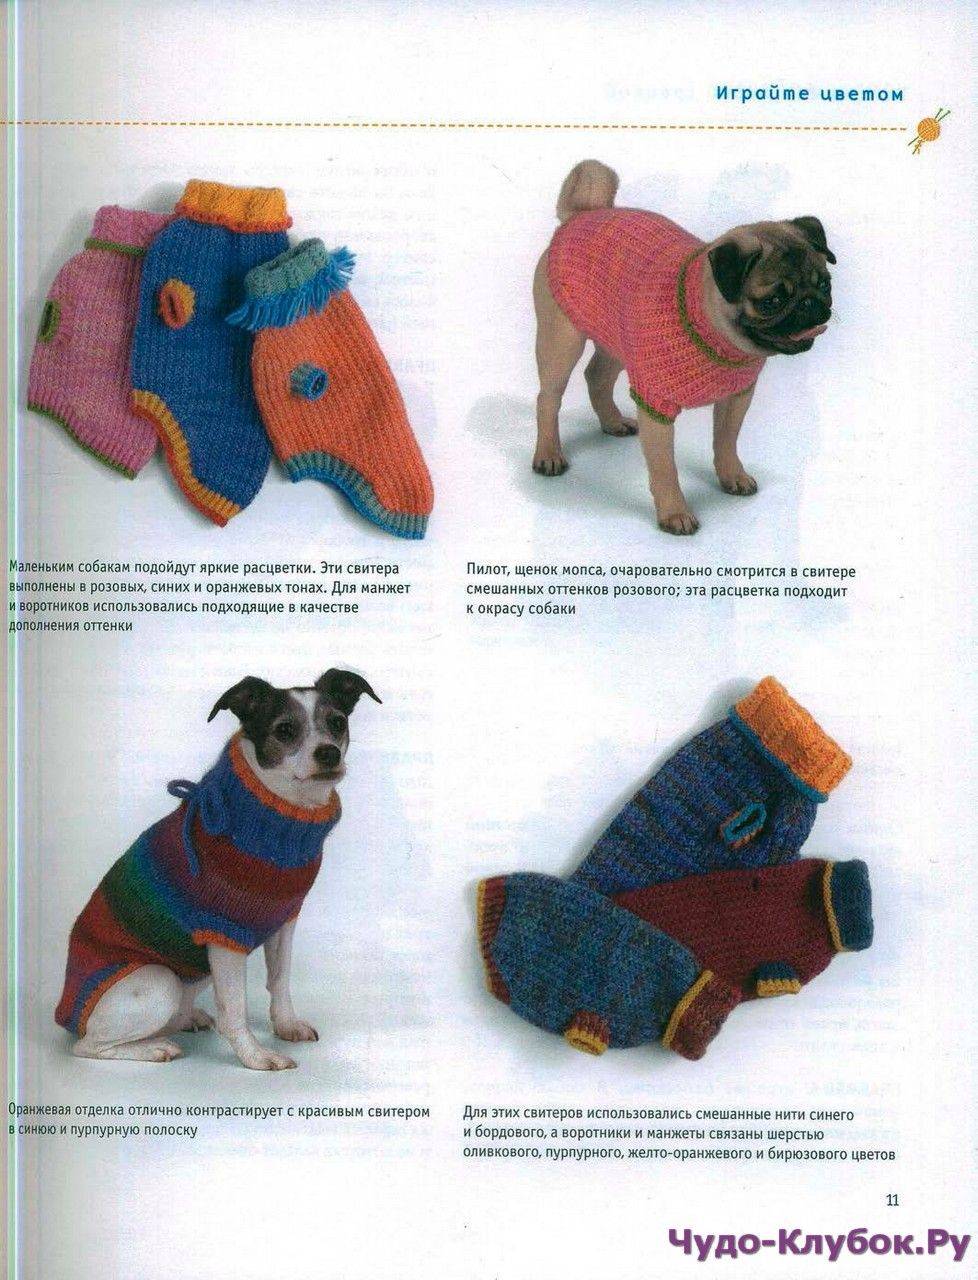 Вязаная одежда для собаки своими руками: инструкция, советы и фото